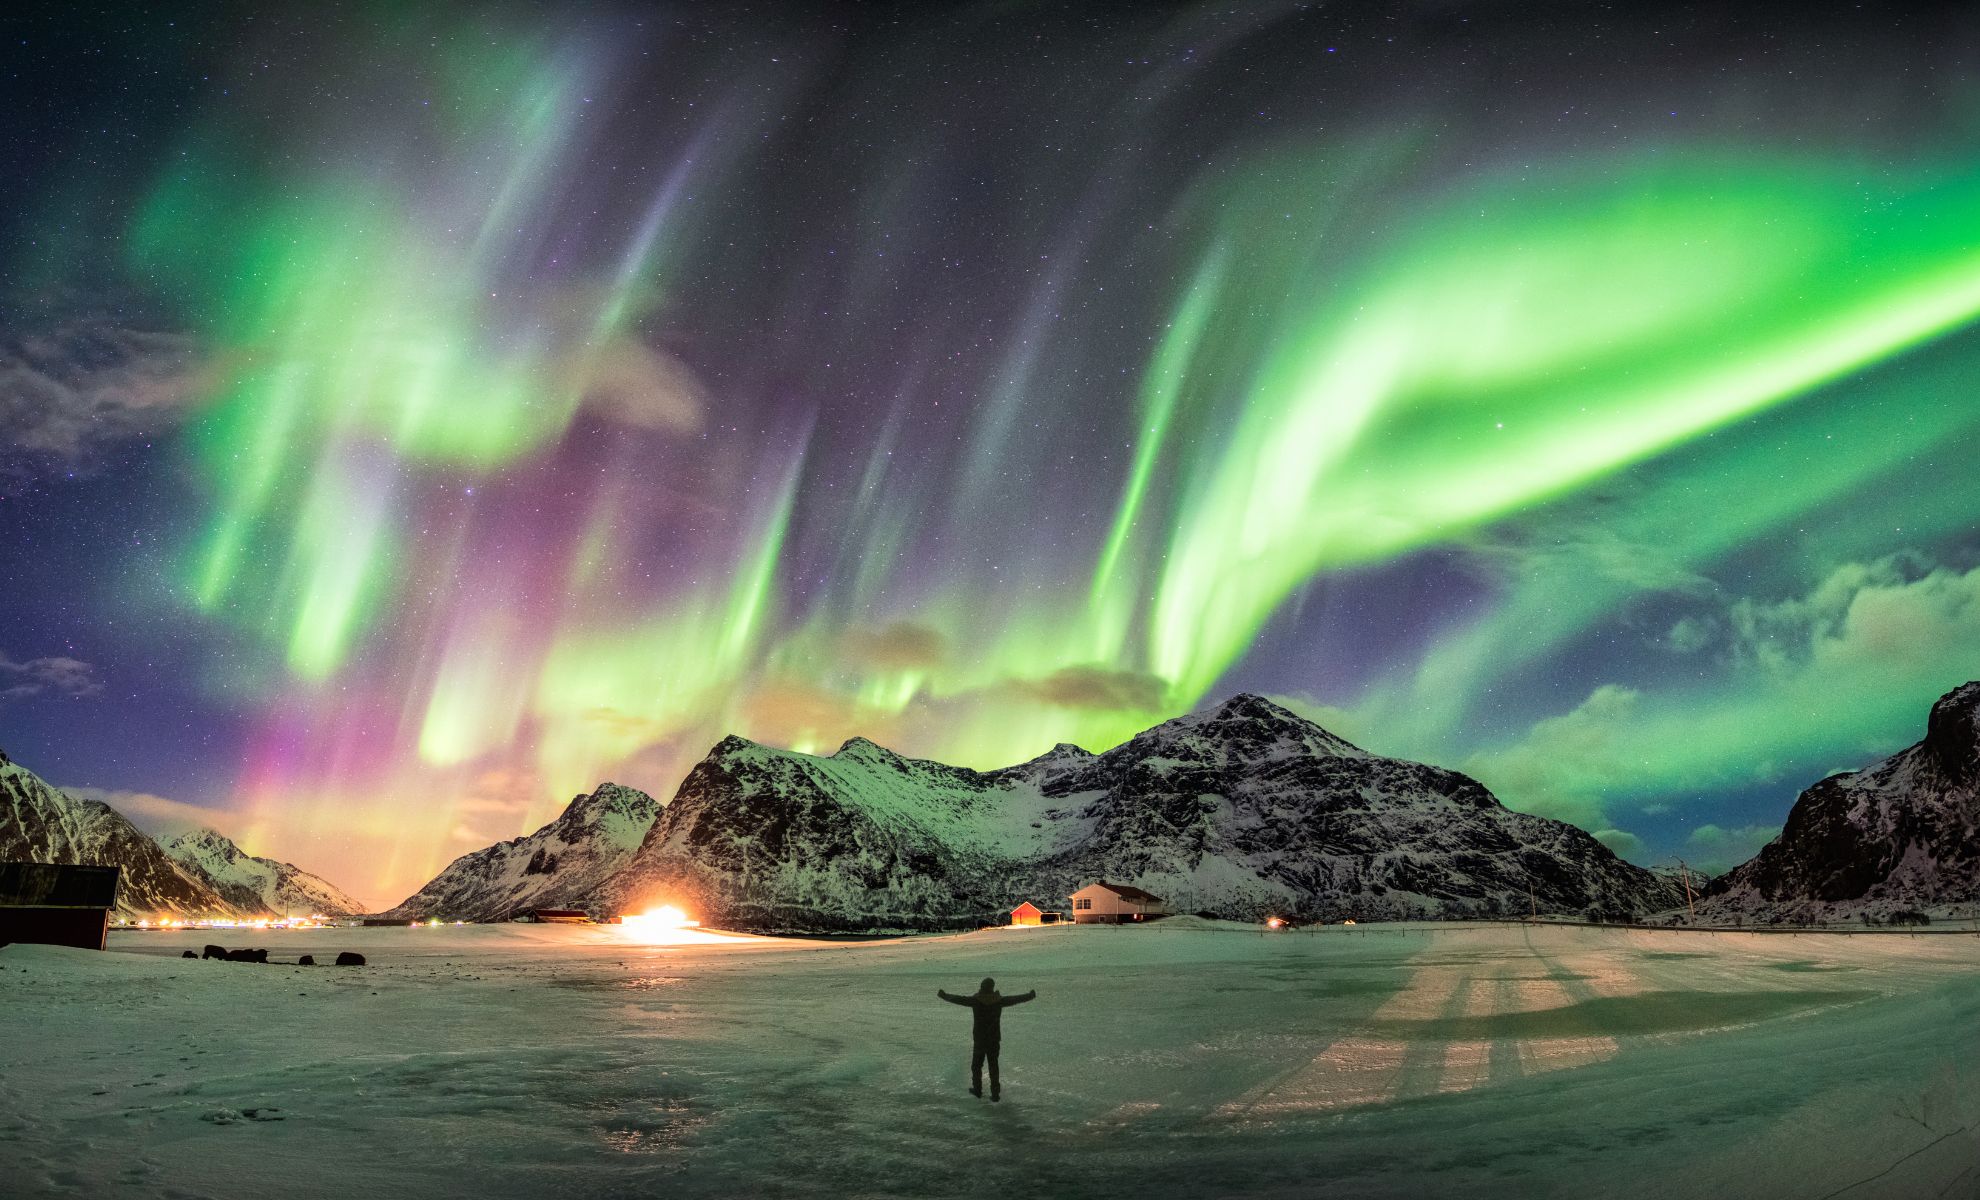 Apprécier les aurores boréales en Norvège durant l'hiver